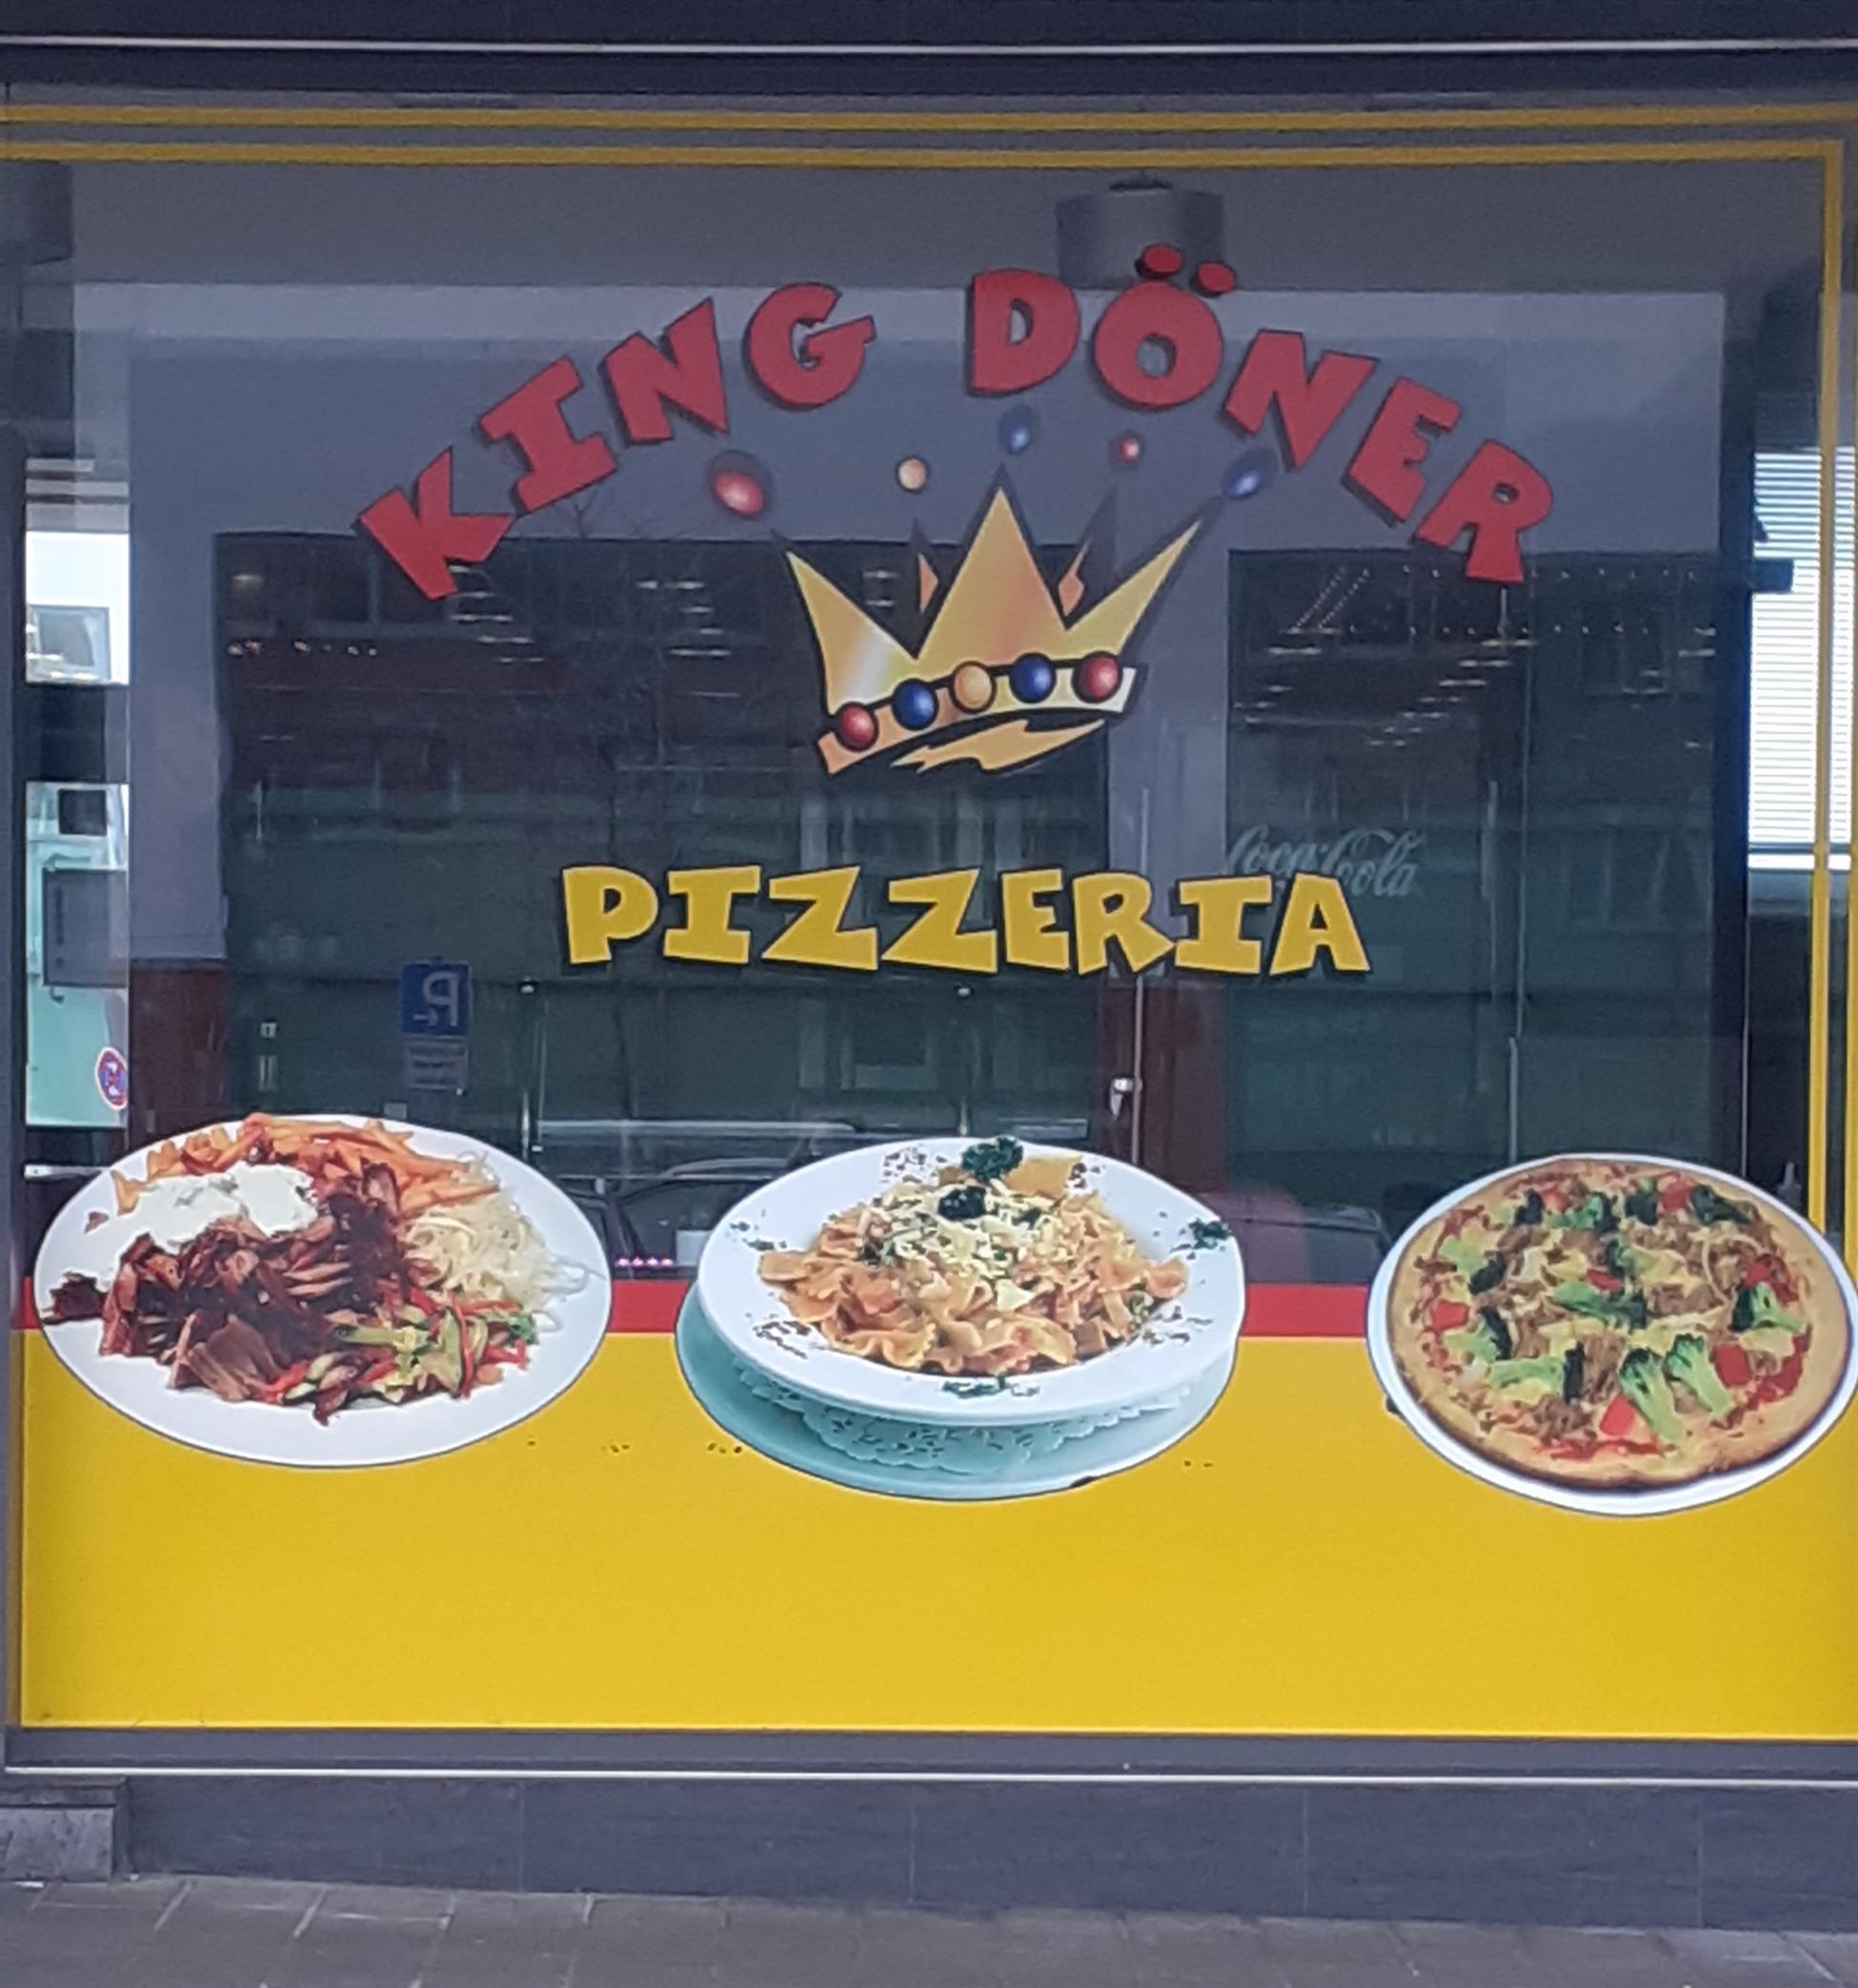 King Döner Pizzeria